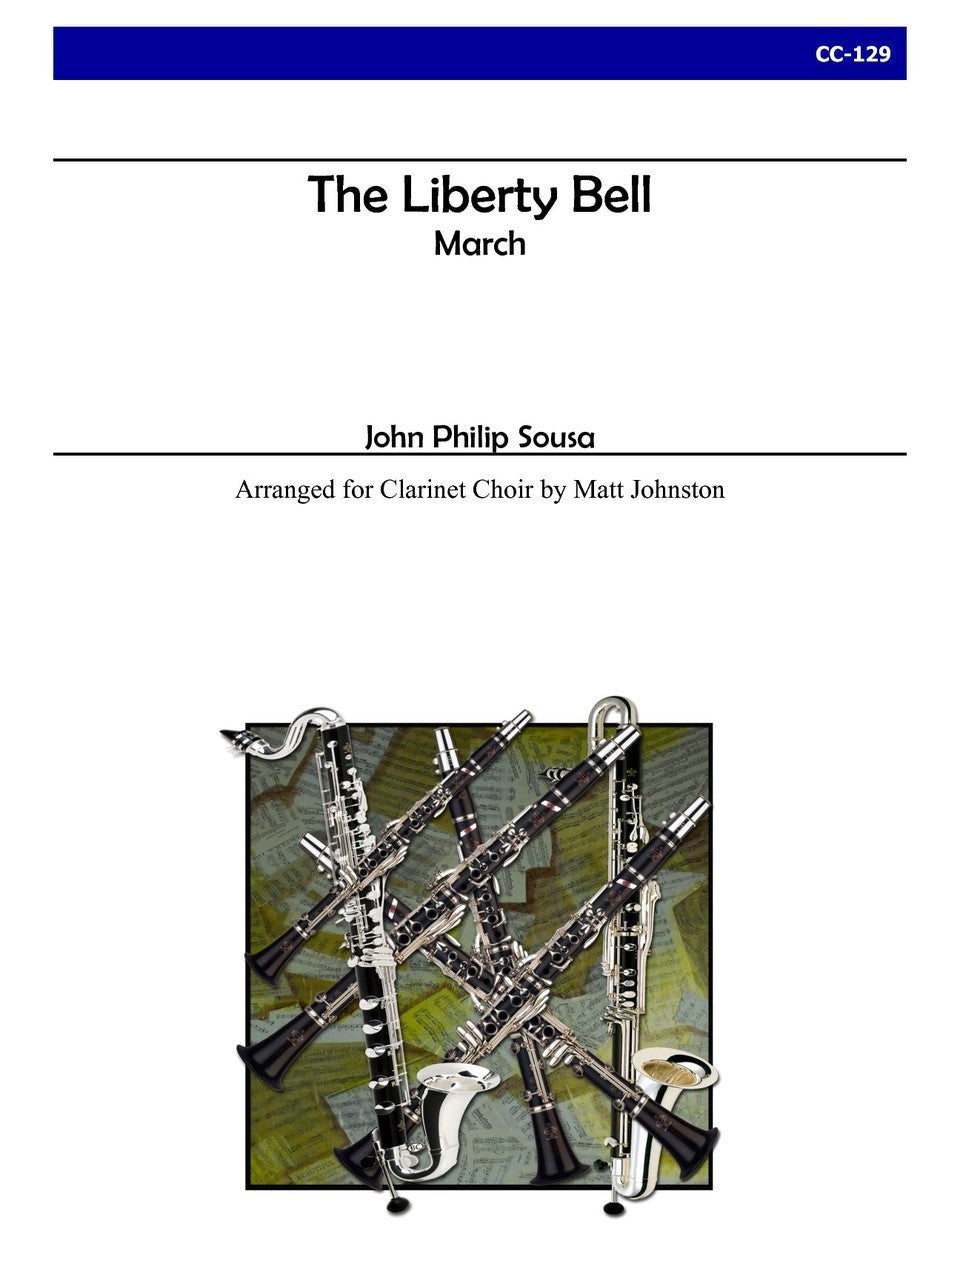 Sousa (arr. Matt Johnston) - The Liberty Bell for Clarinet Choir